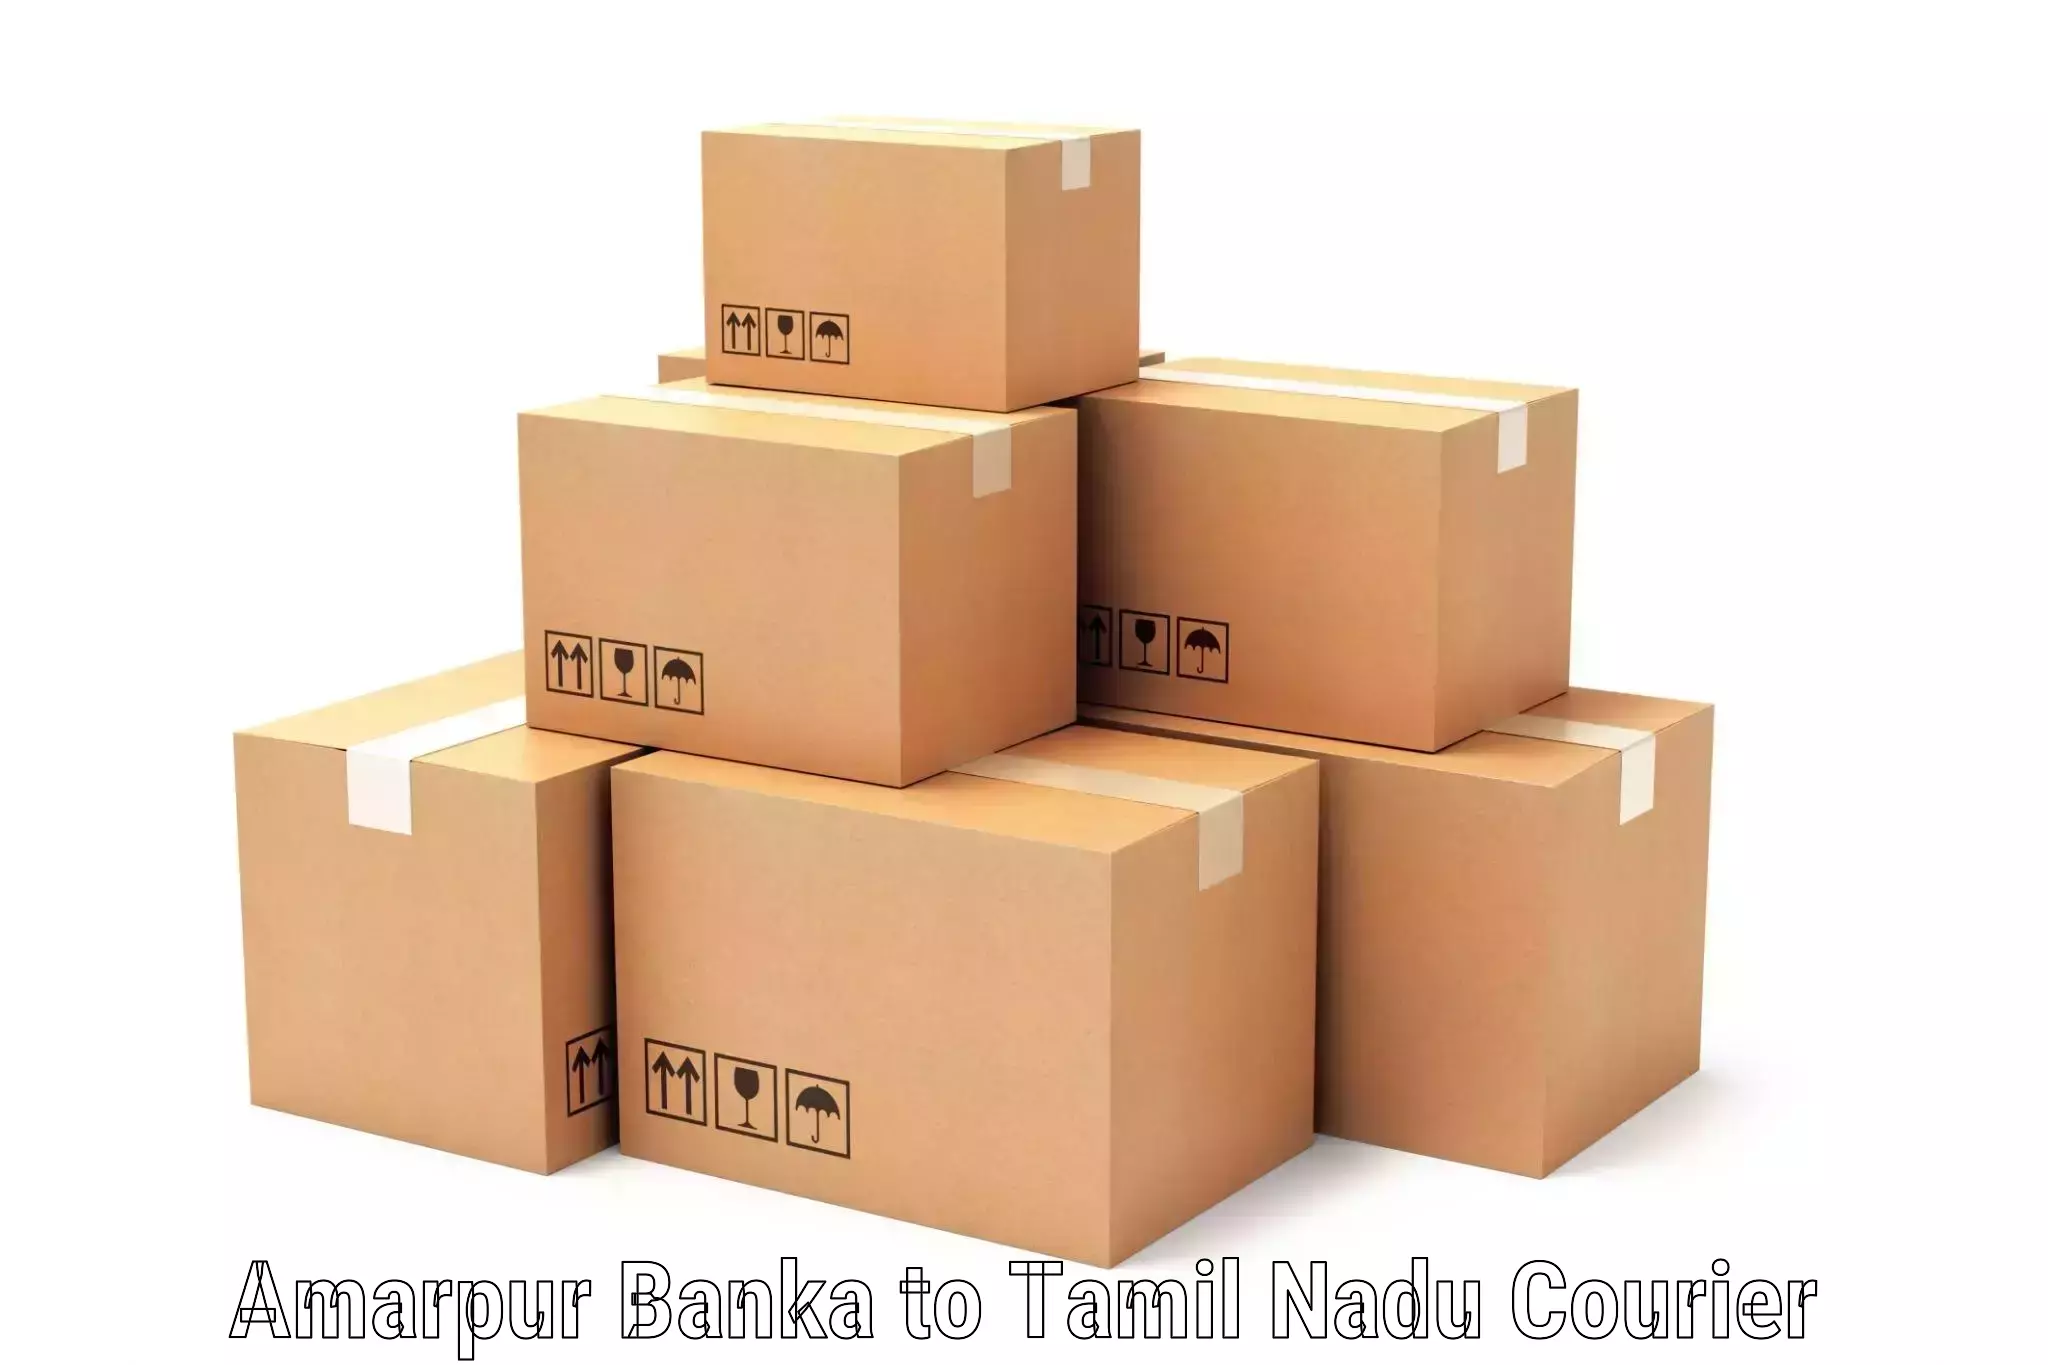 Customer-centric shipping in Amarpur Banka to Kudankulam